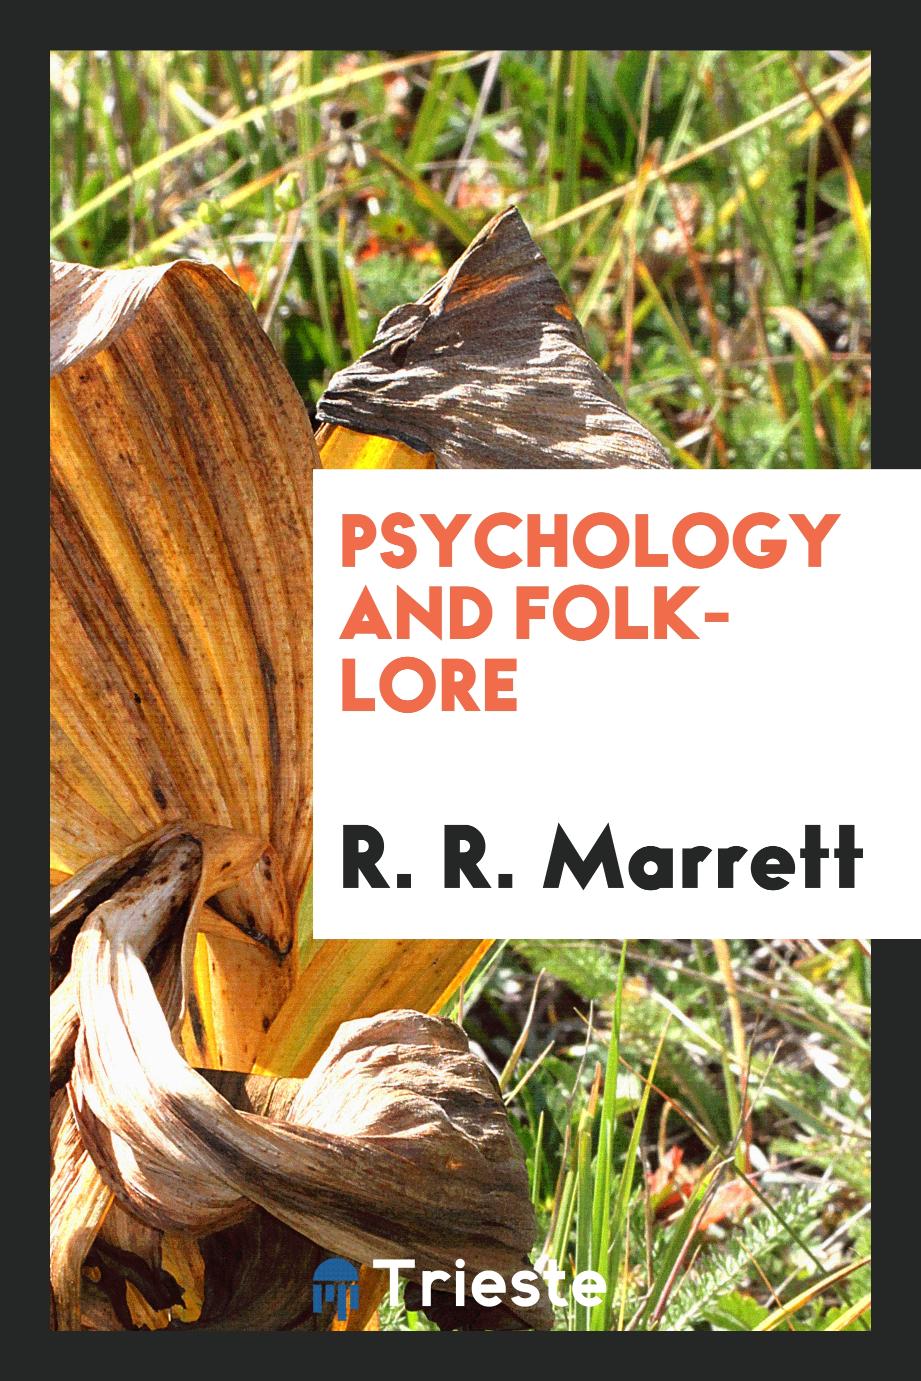 Psychology and folk-lore